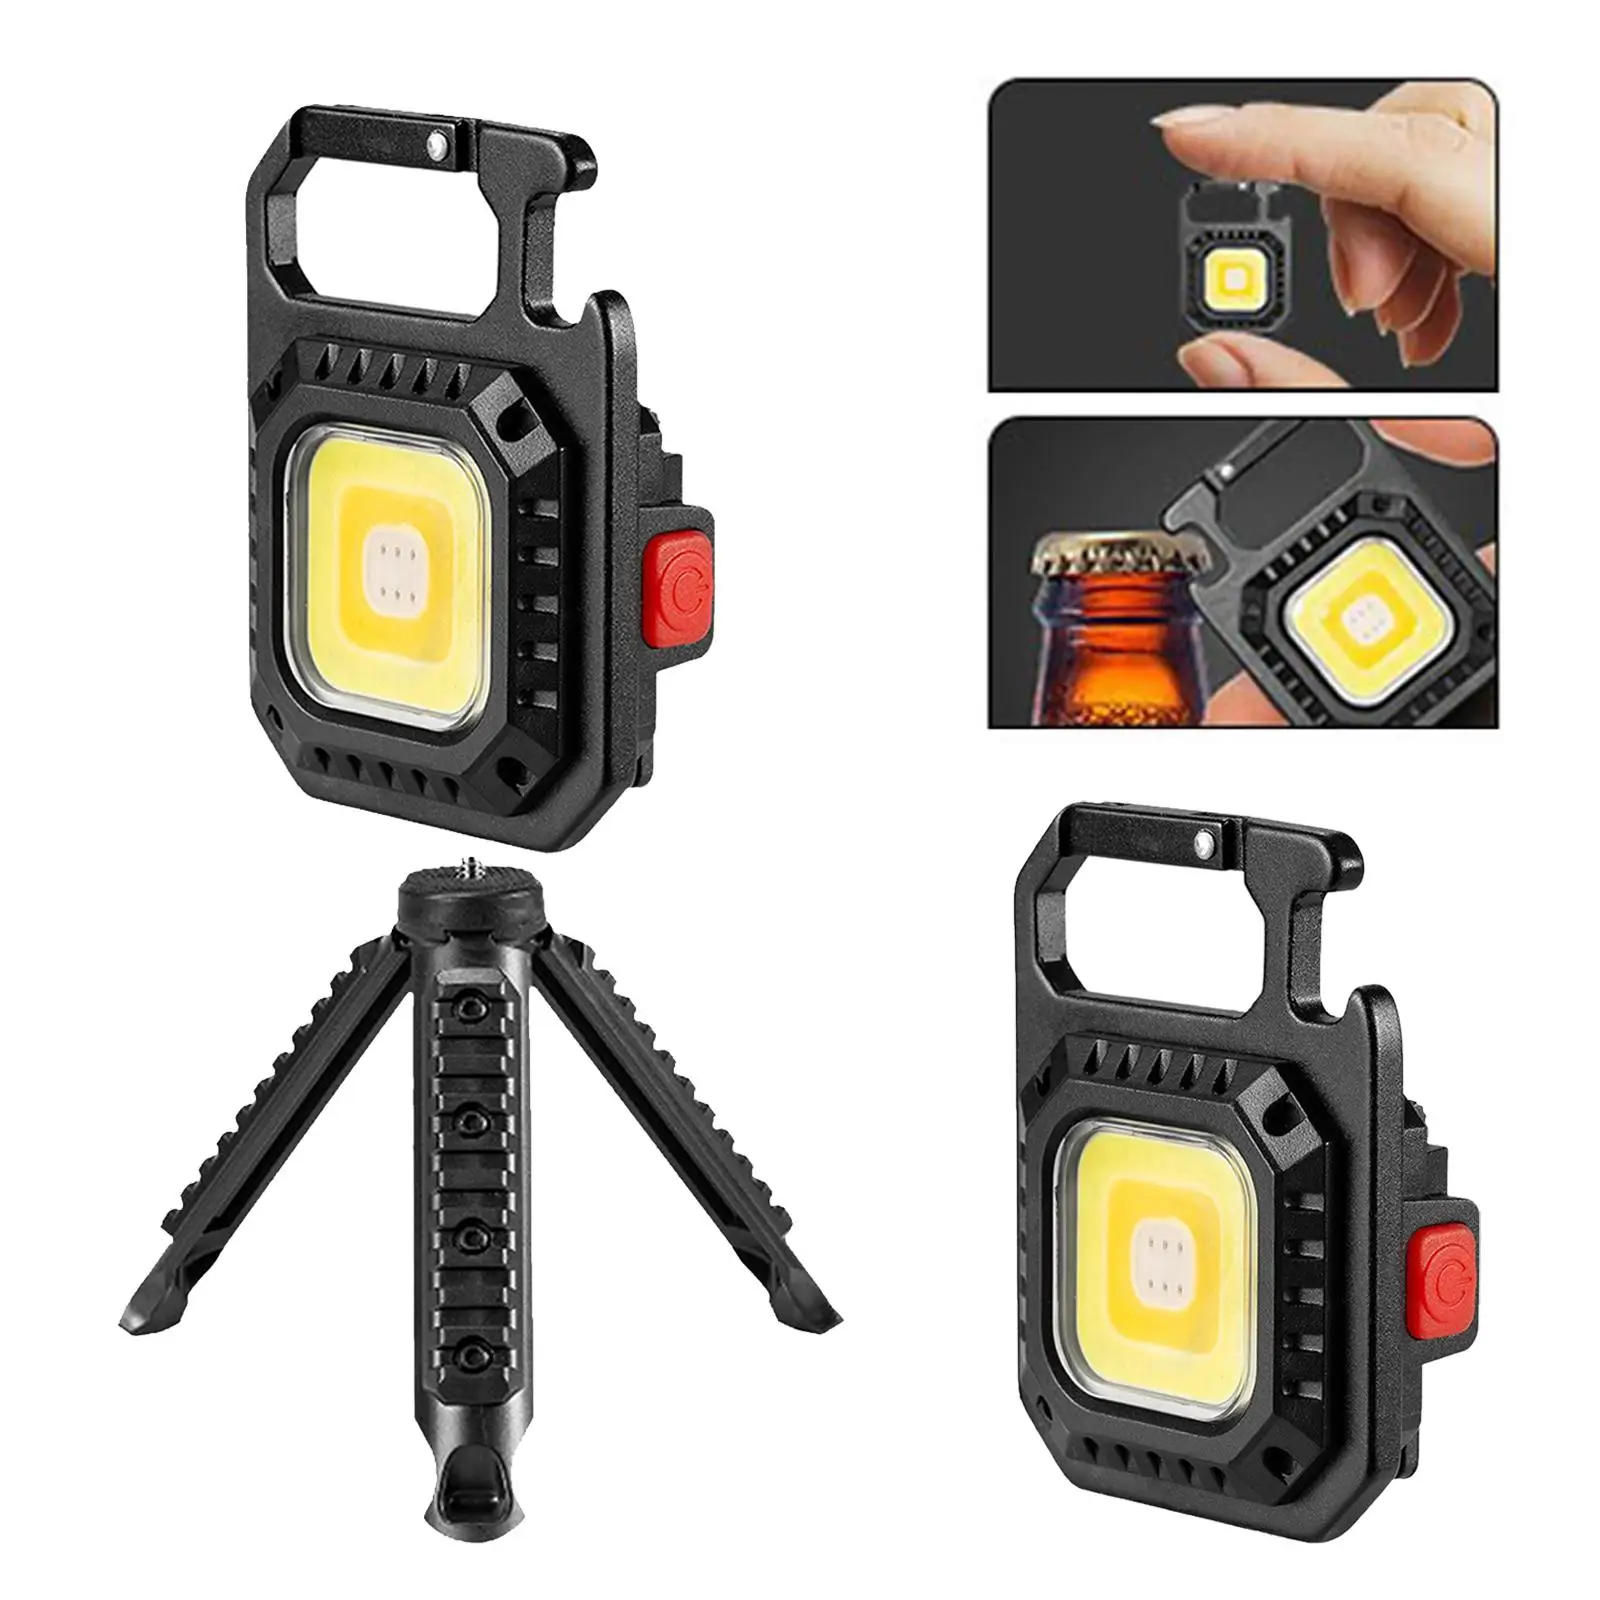 Portable LED Flashlight Magnet Base Keychain for Emergency Working Walking